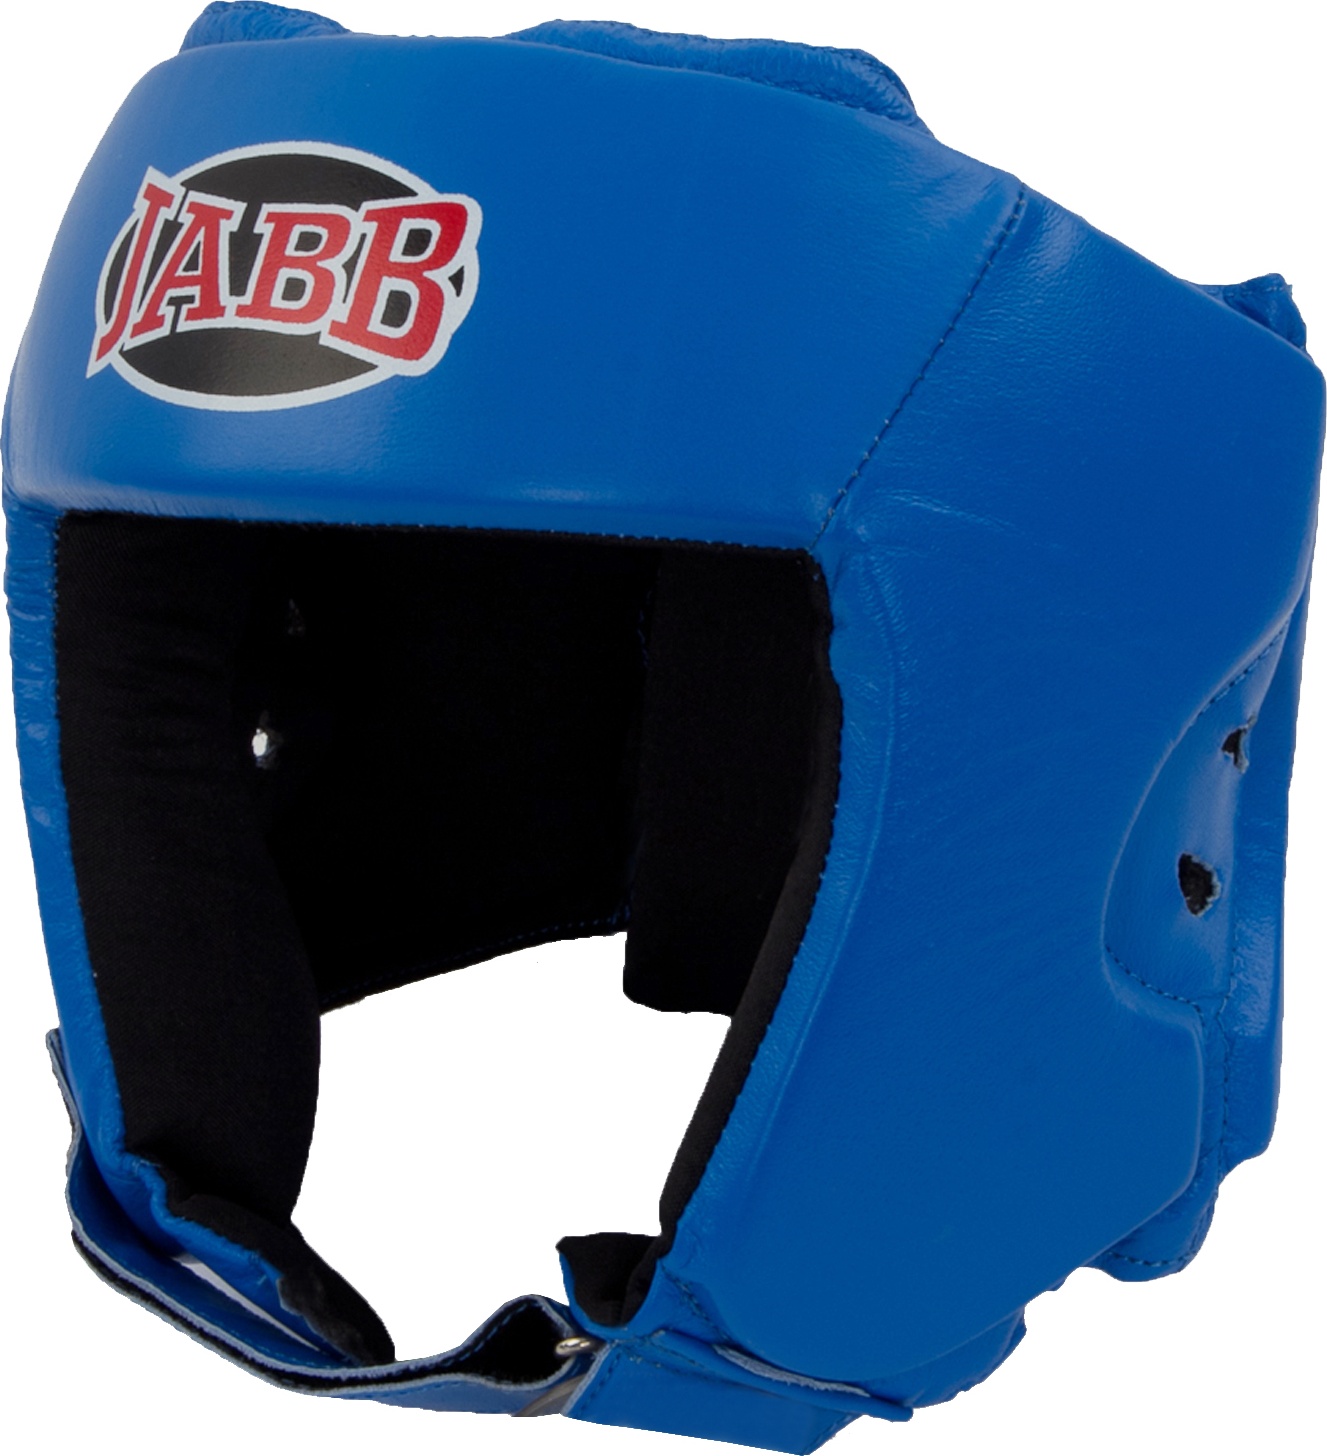 Боксерский шлем Jabb JE-2004 синий M